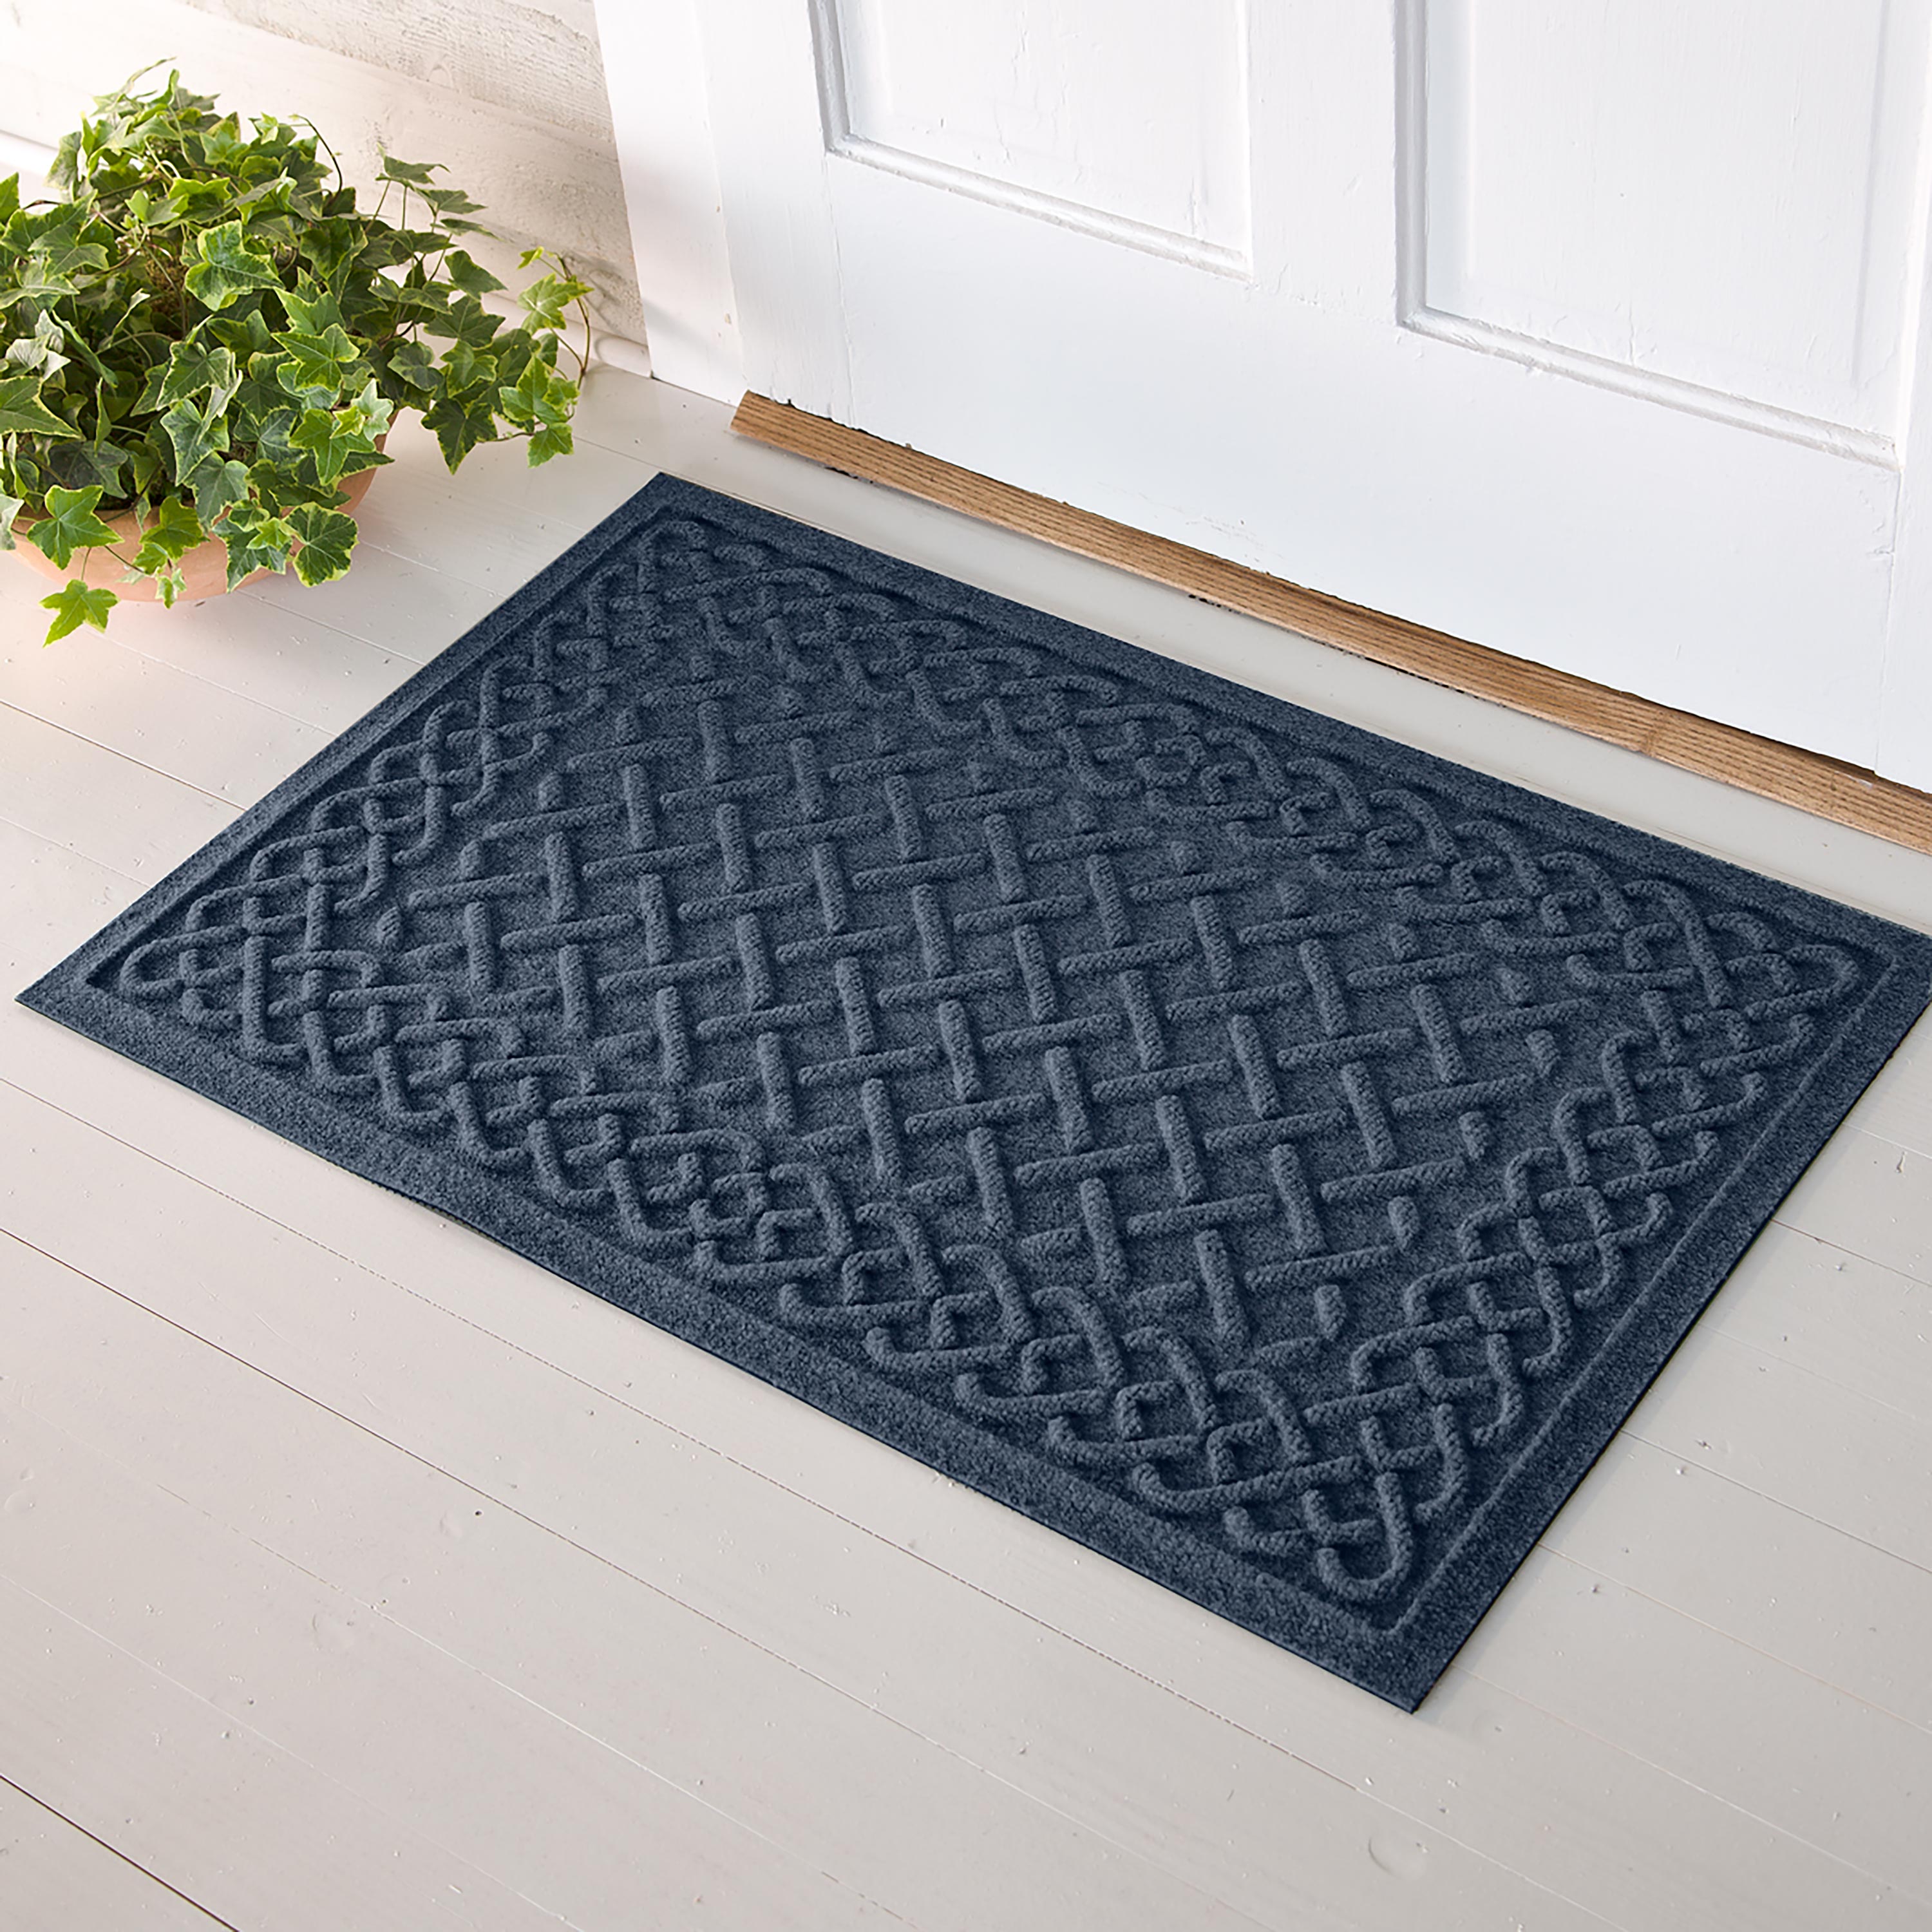 Waterhog Cable Weave Doormat, 2' x 5'